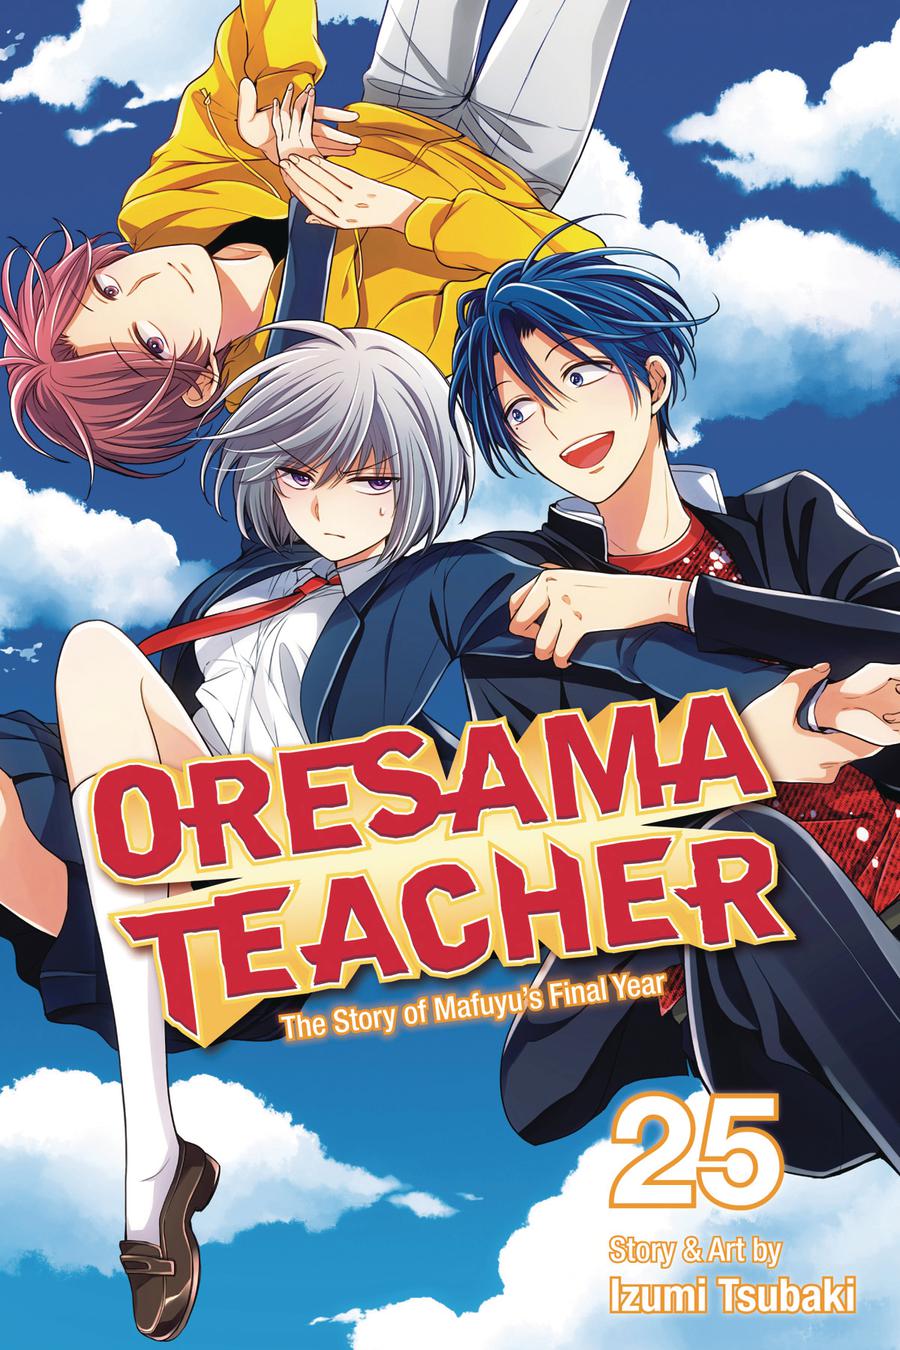 Oresama Teacher Vol 25 GN